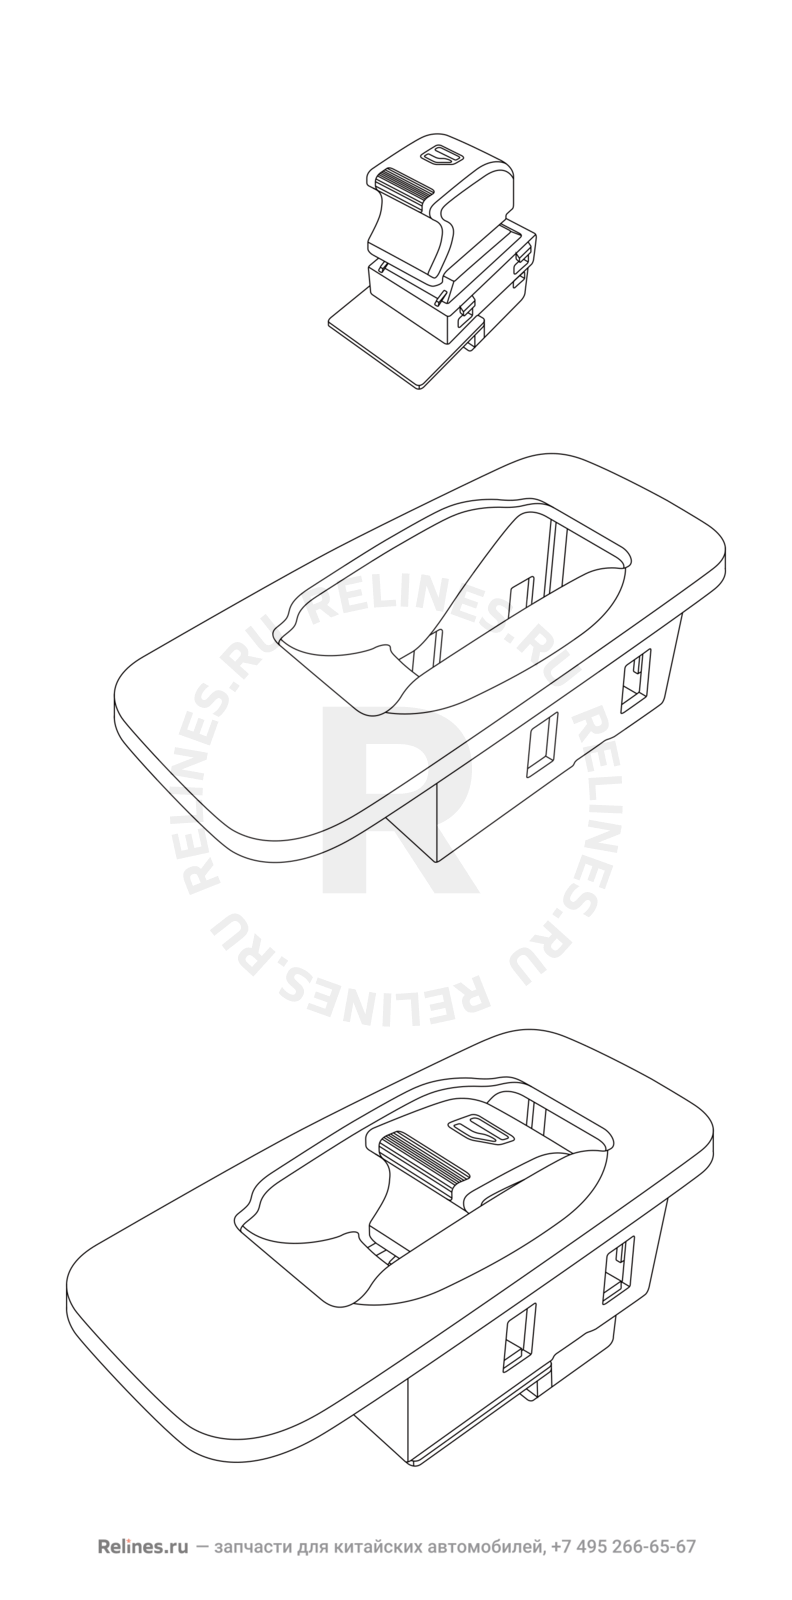 Запчасти Chery Tiggo 3 Поколение I (2014)  — Кнопка стеклоподъемника и накладка для кнопок стеклоподъемника — схема